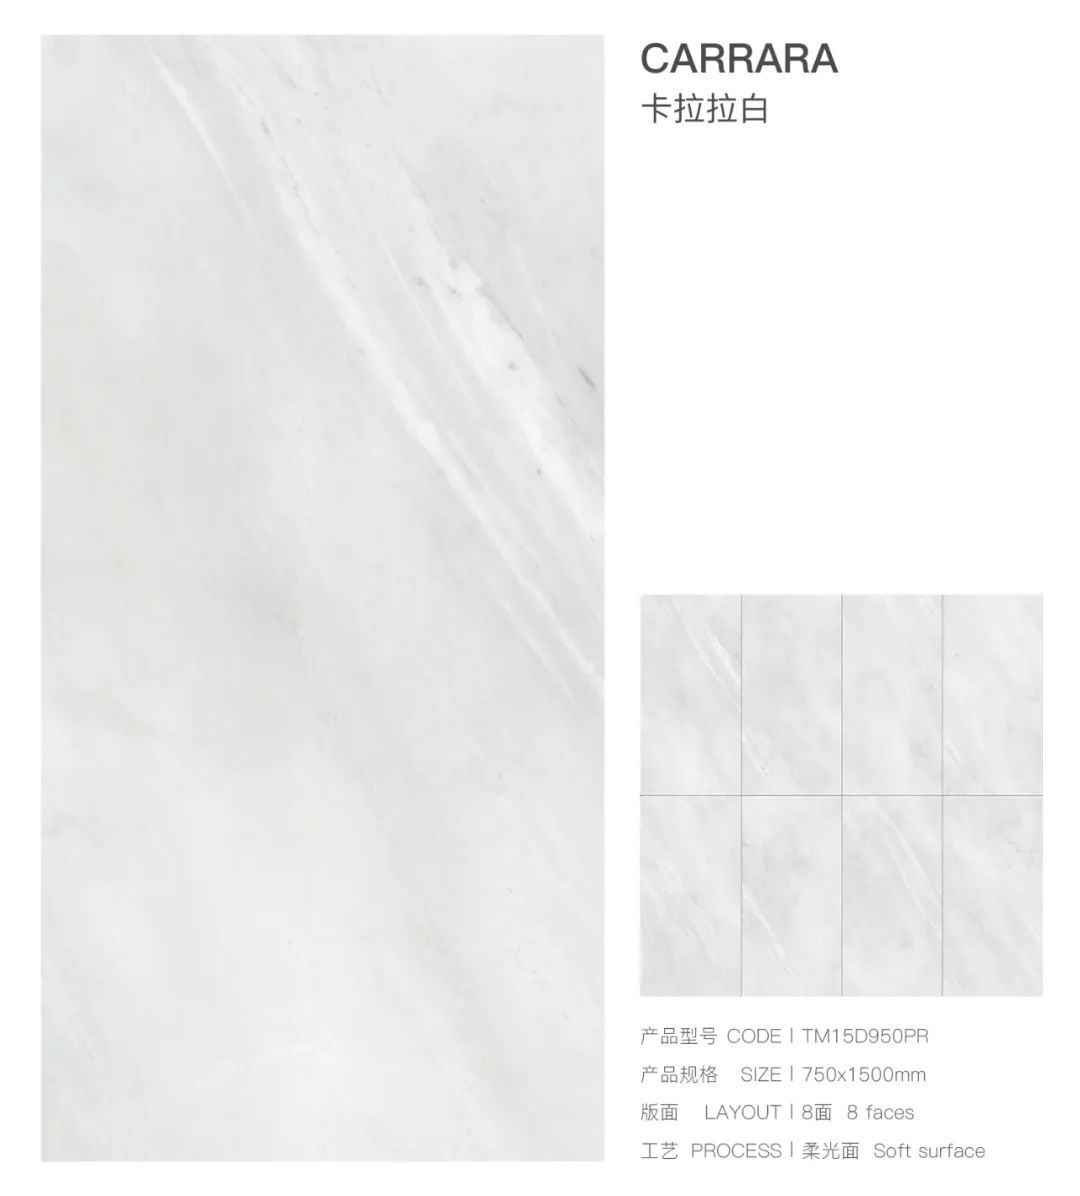 新品上市丨通利大理石瓷砖750x1500新品魅力呈现(上)(图9)